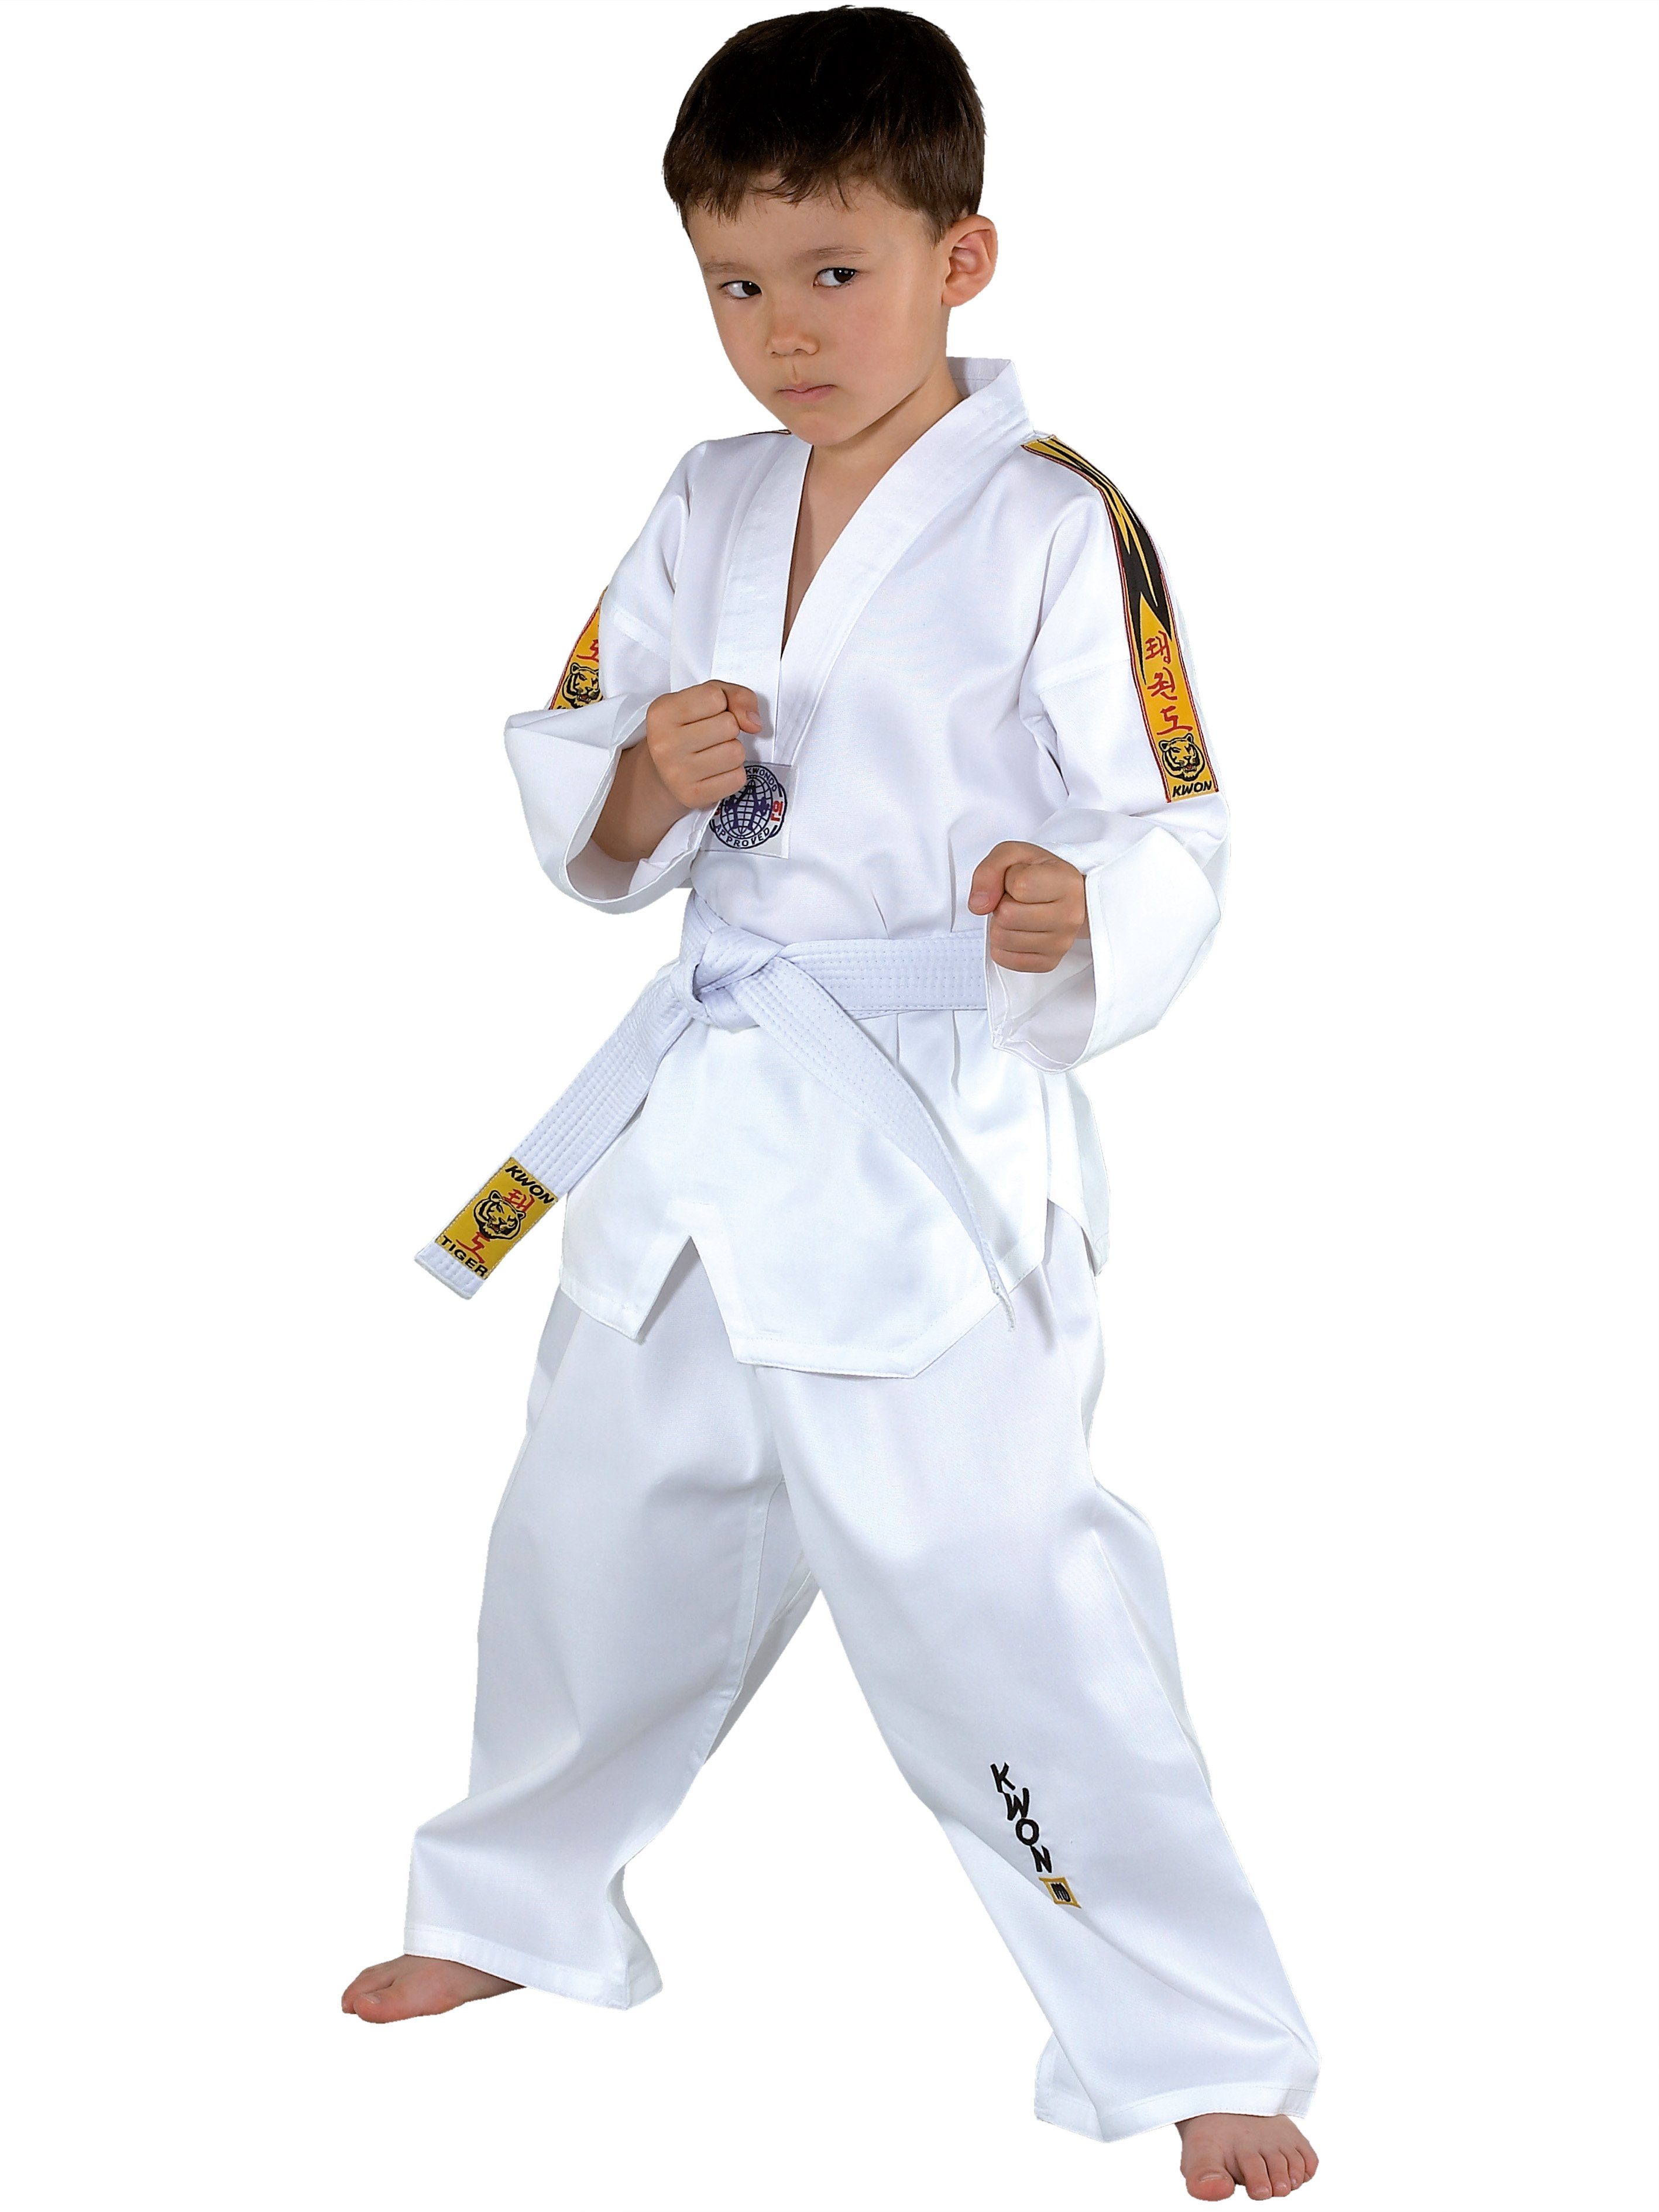 KWON Taekwondoanzug »Tiger Taekwondo Anzug mit Gürtel Hose und Jacke Club  Line Schulterstreifen« (3-teilig, komplett), Kinder, Jugendlich,  Erwachsene, Größen: 90 - 180 cm, weiß